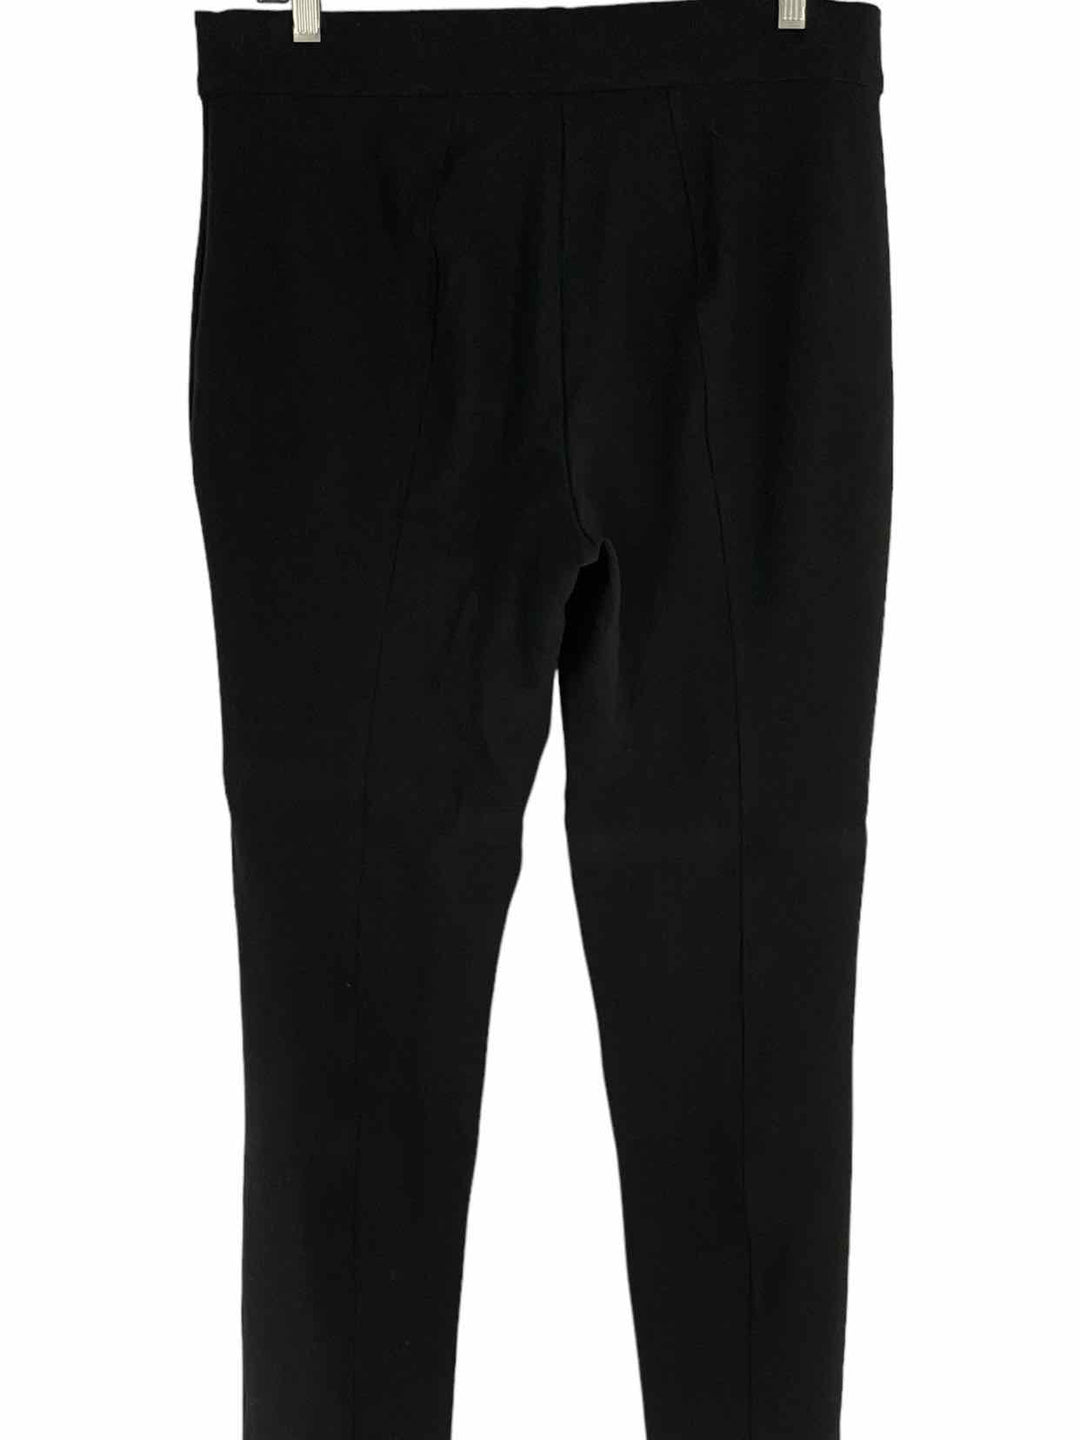 Anne Klein Size 14 Black Pants